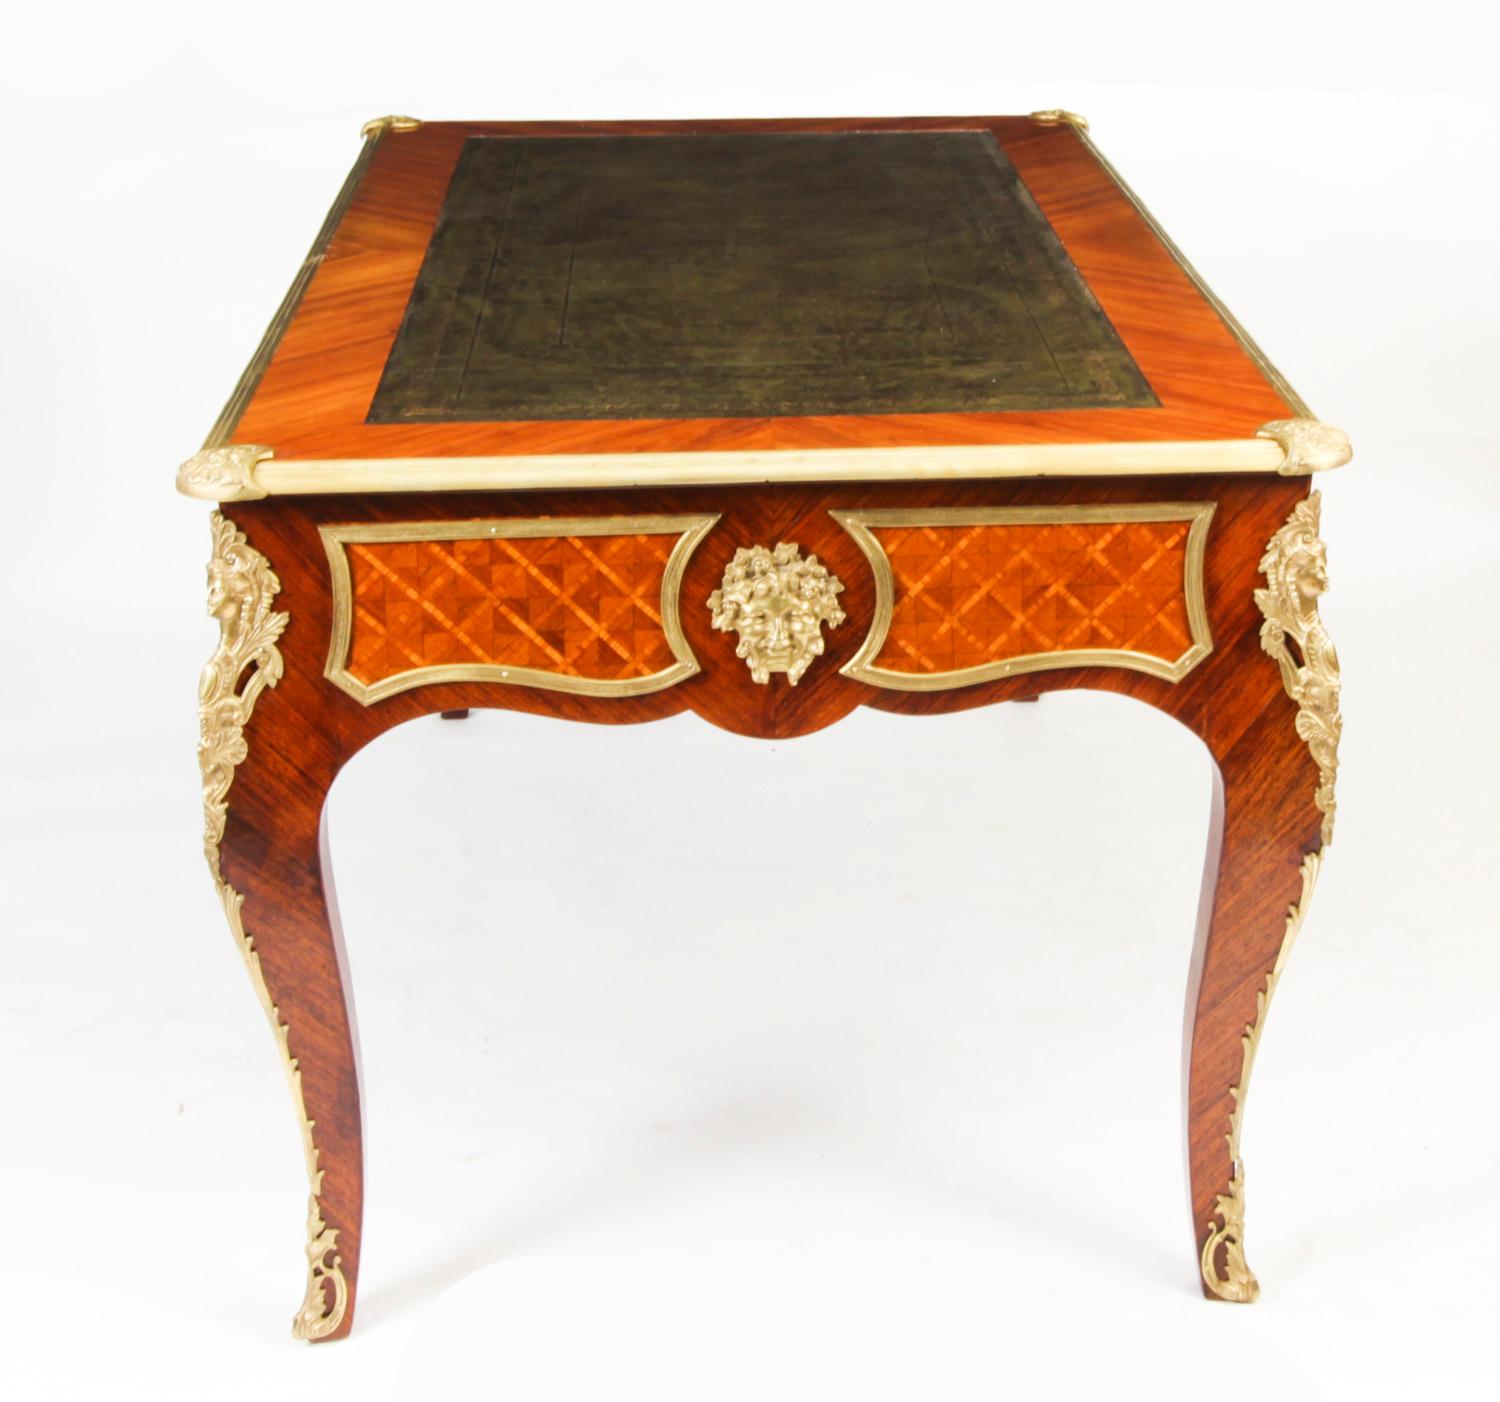 Antique Louis Revival Ormolu Mounted Bureau Plat Desk 19th C For Sale 9